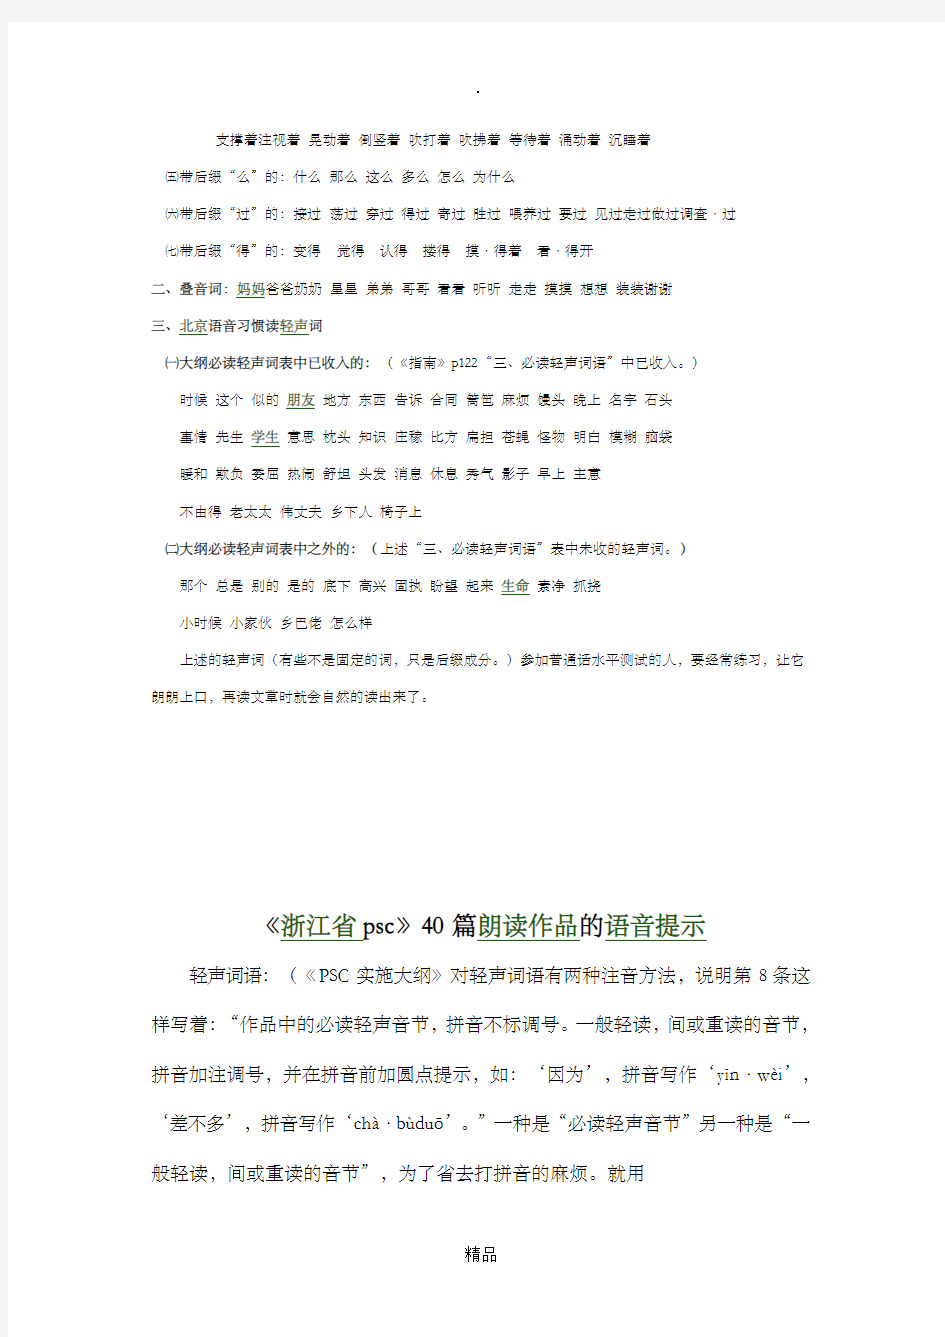 浙江省普通话测试用朗读作品40篇的语音提示